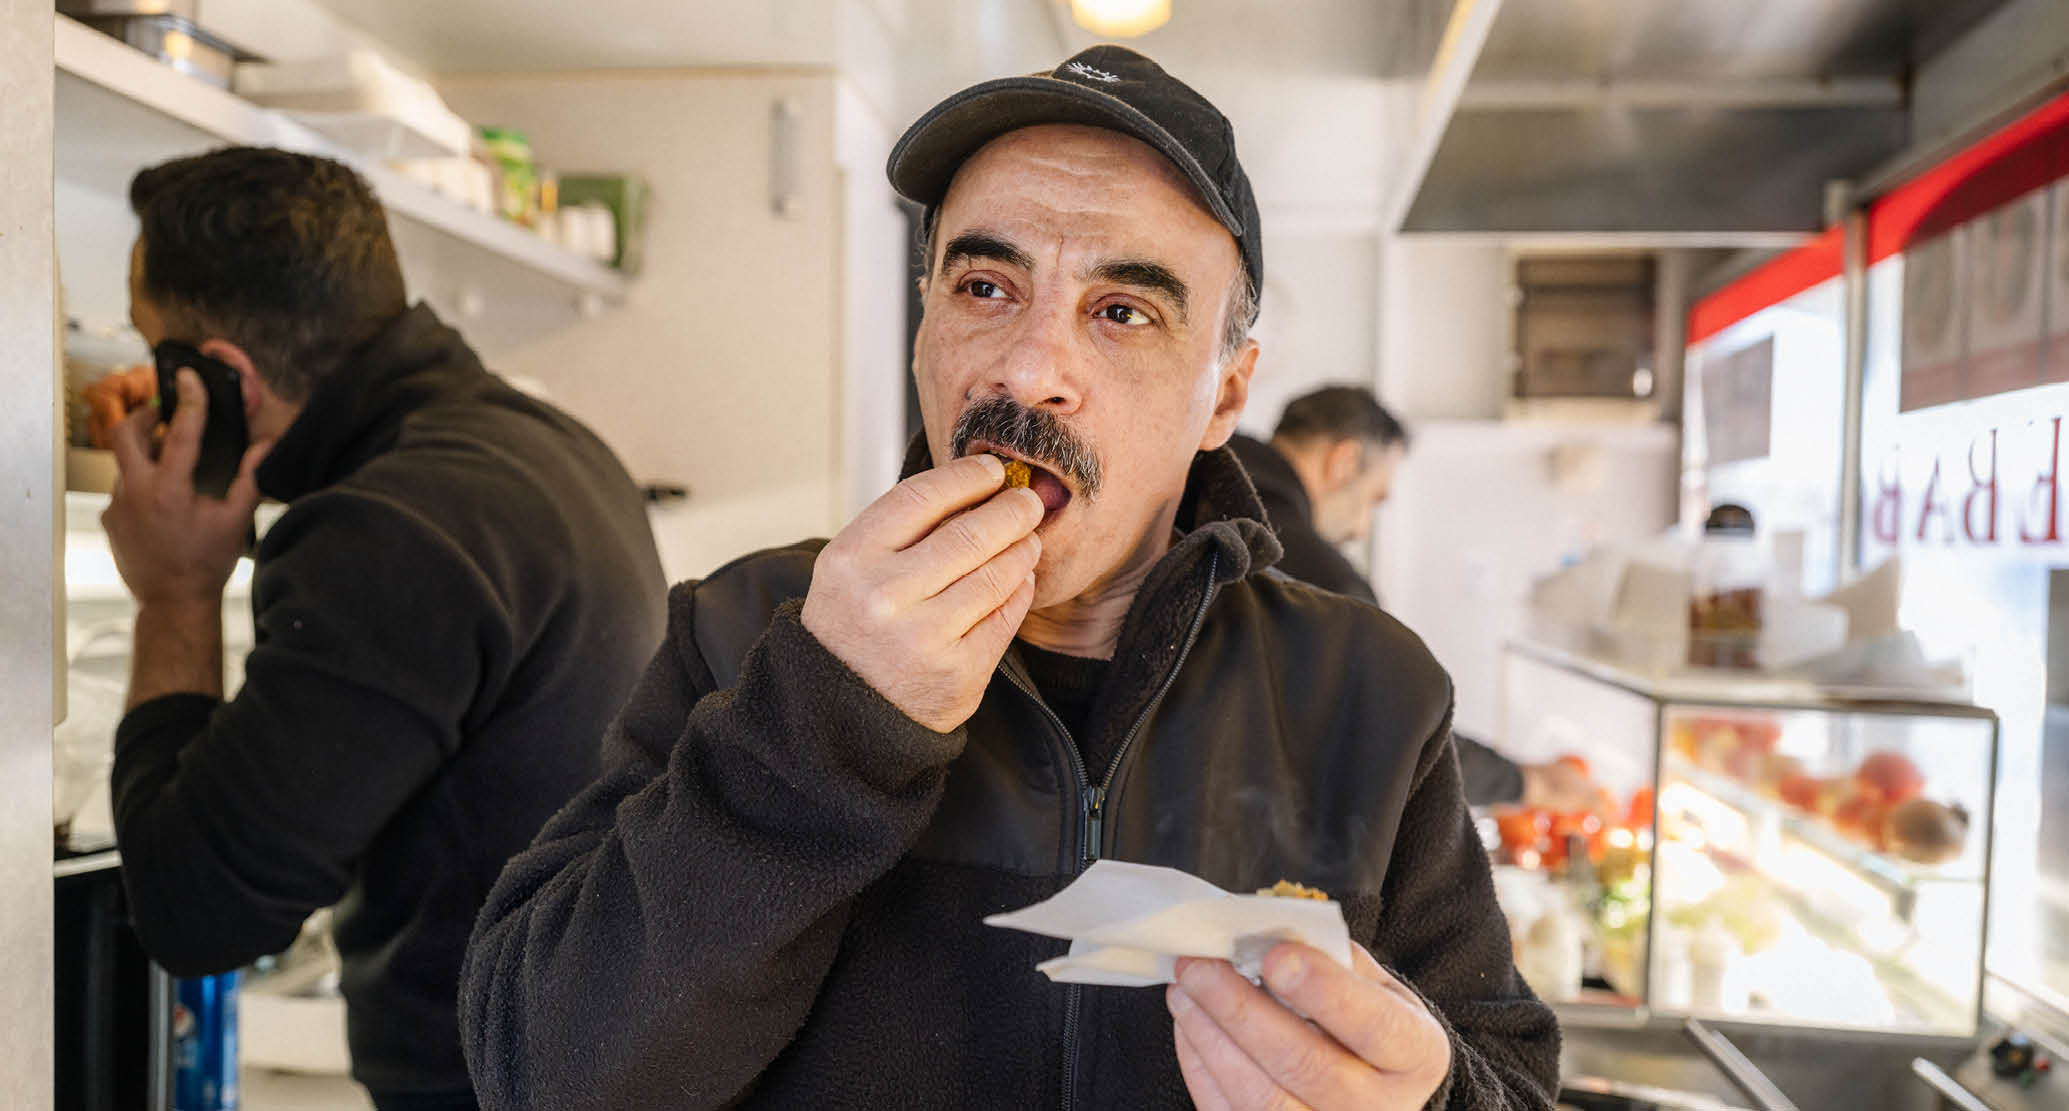 En man med mustasch i svart fleecejacka och keps äter en falafel.
I bakgrunden syns köket i en falafelvagn och två personer som arbetar. 